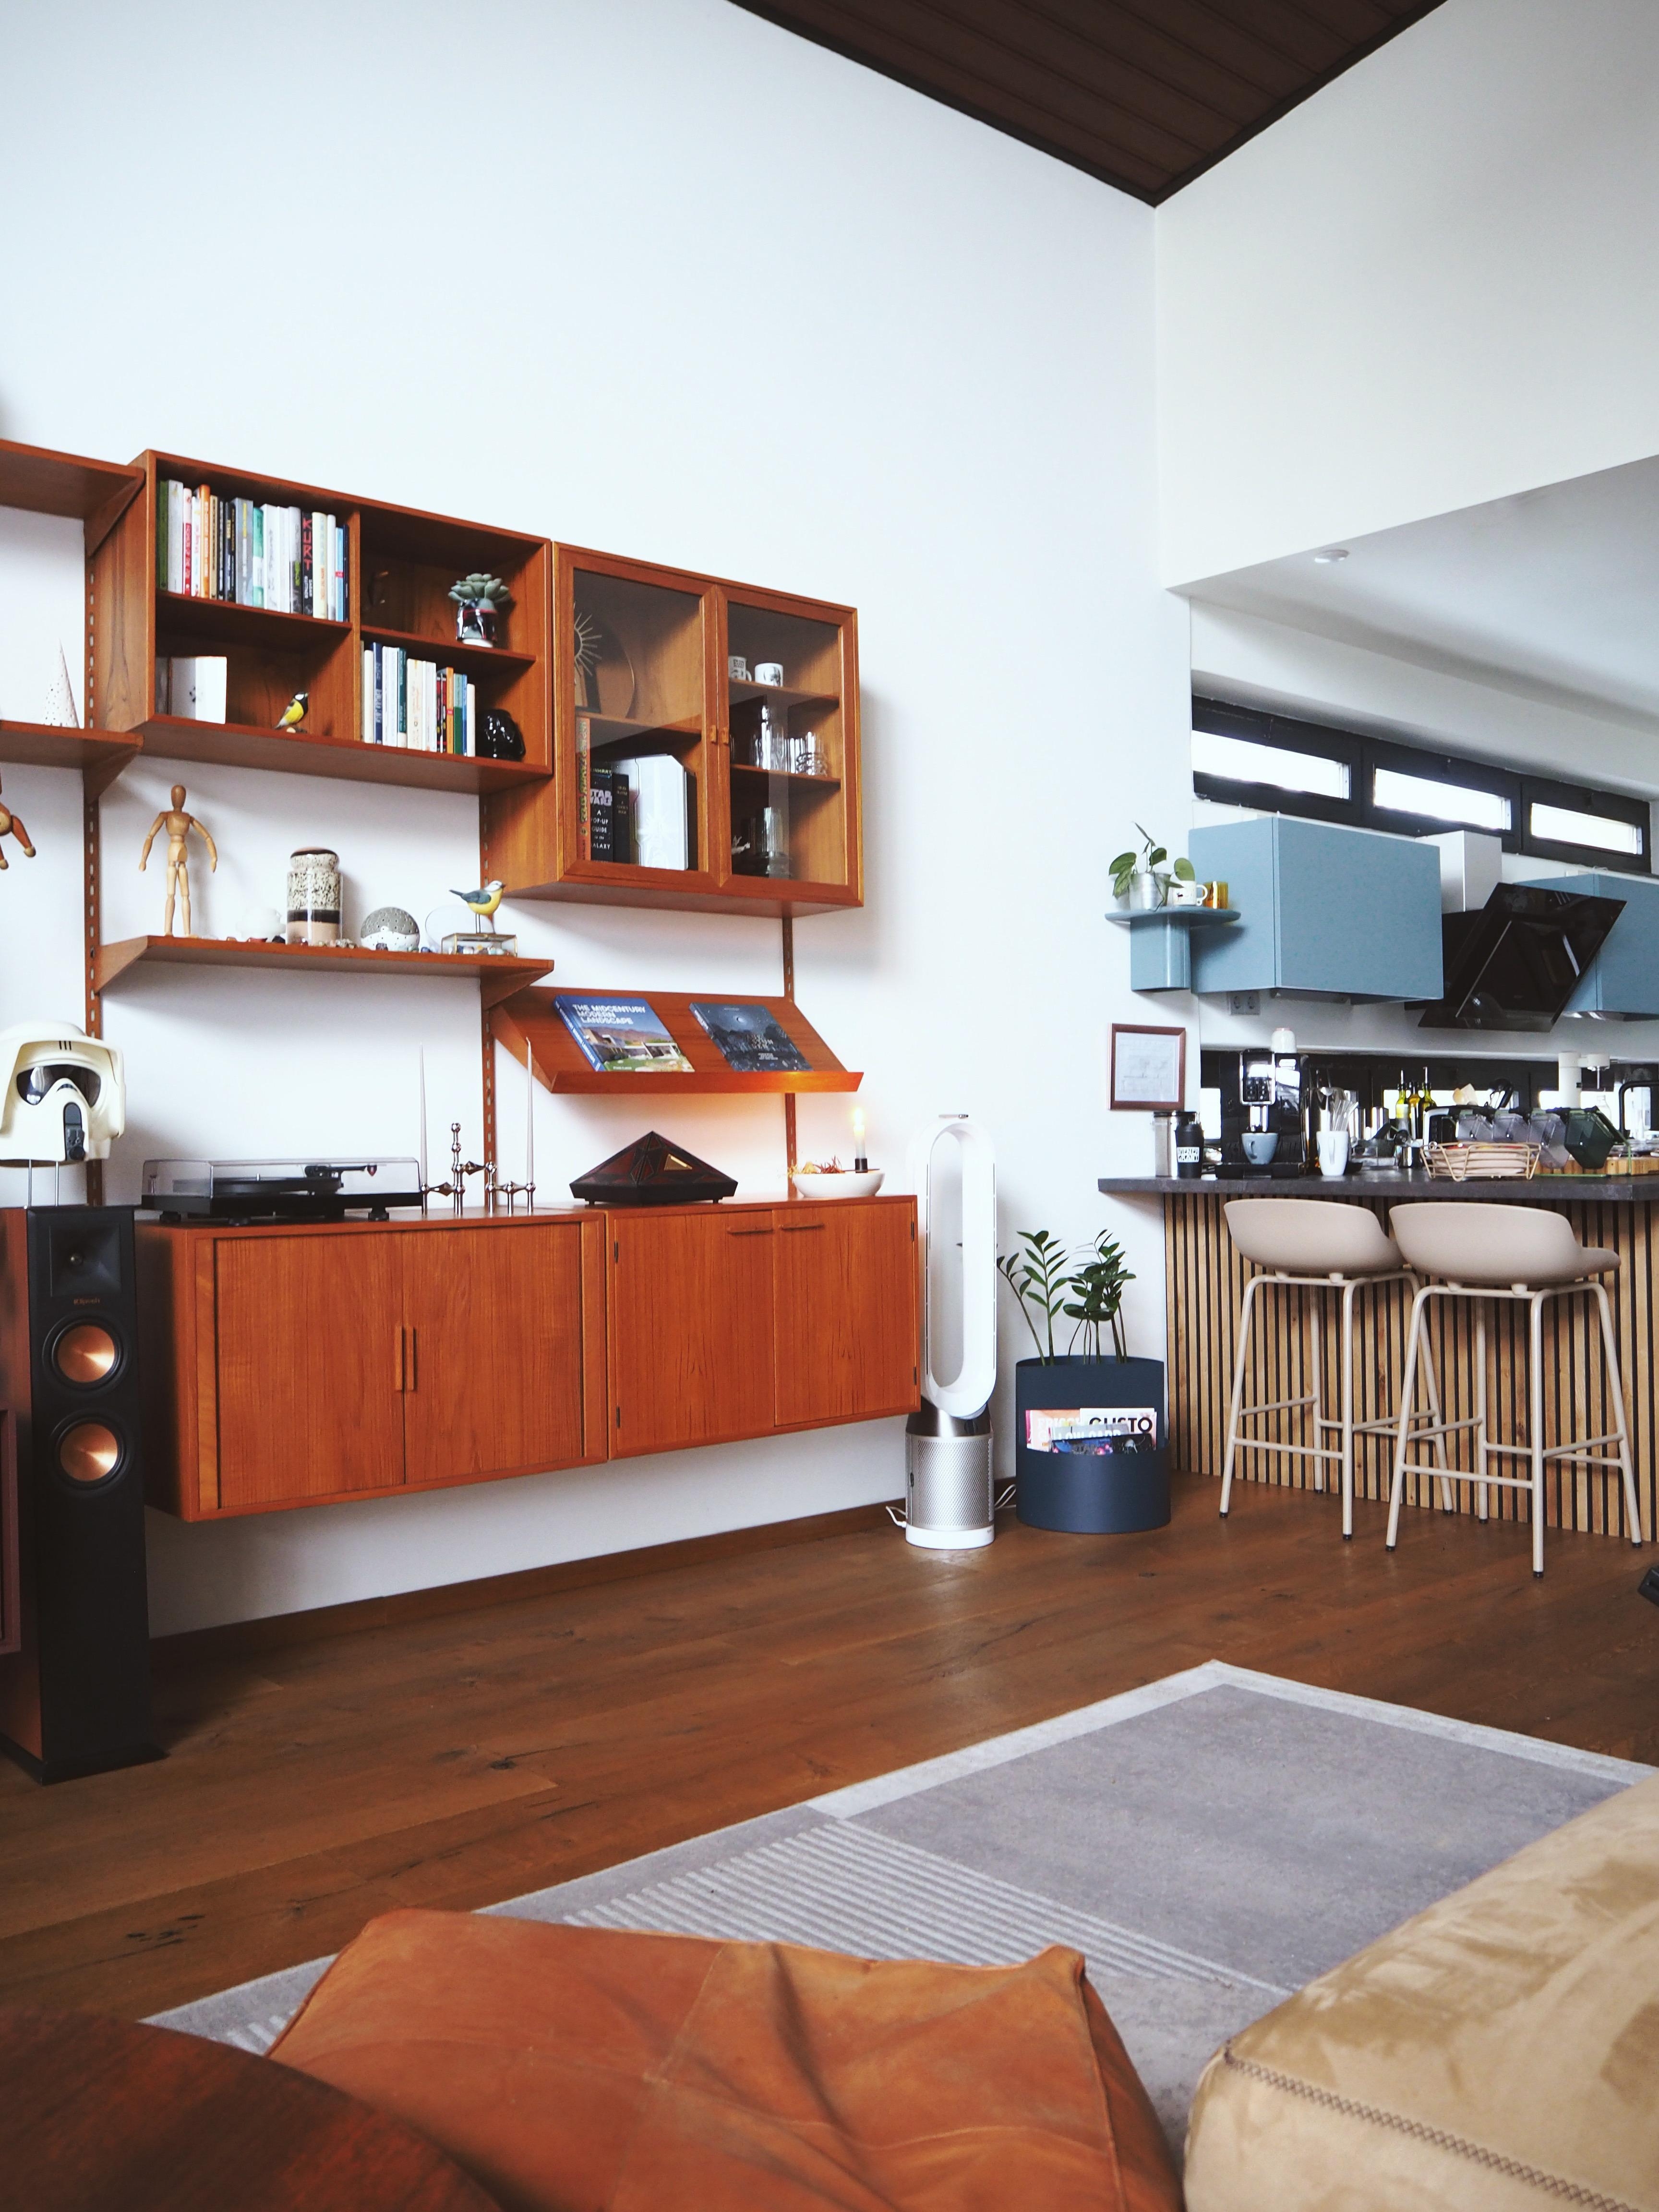 Einblick in die Wohnküche #couchstyle #kaikristiansen